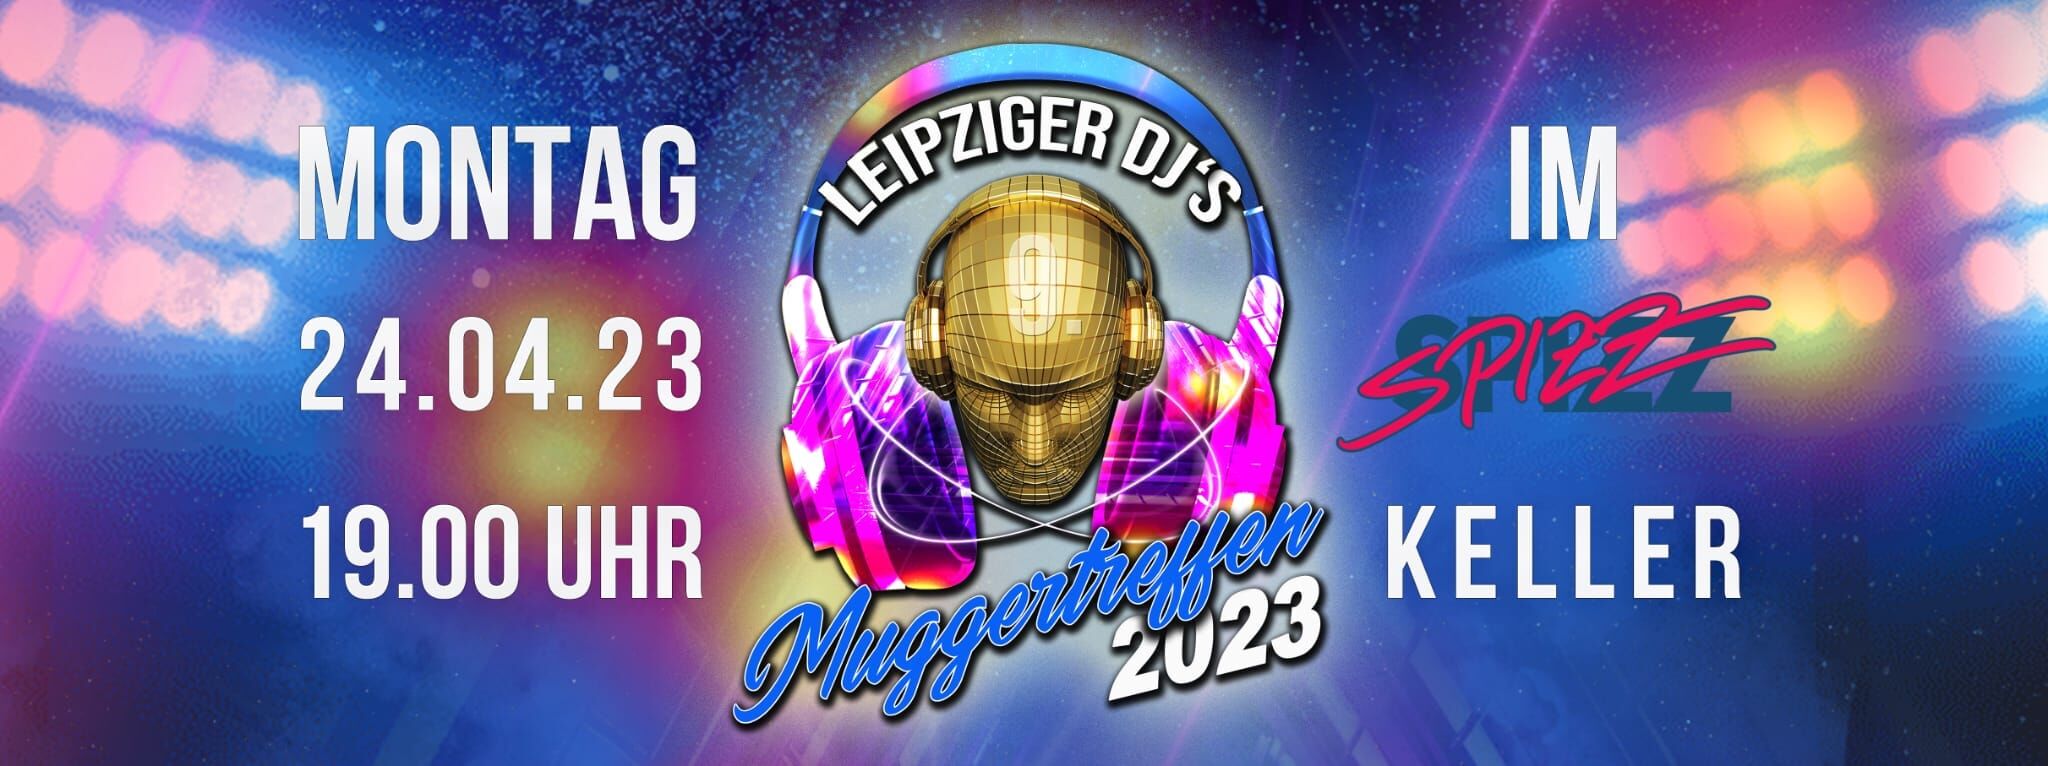 Leipziger DJ & Muggertreffen